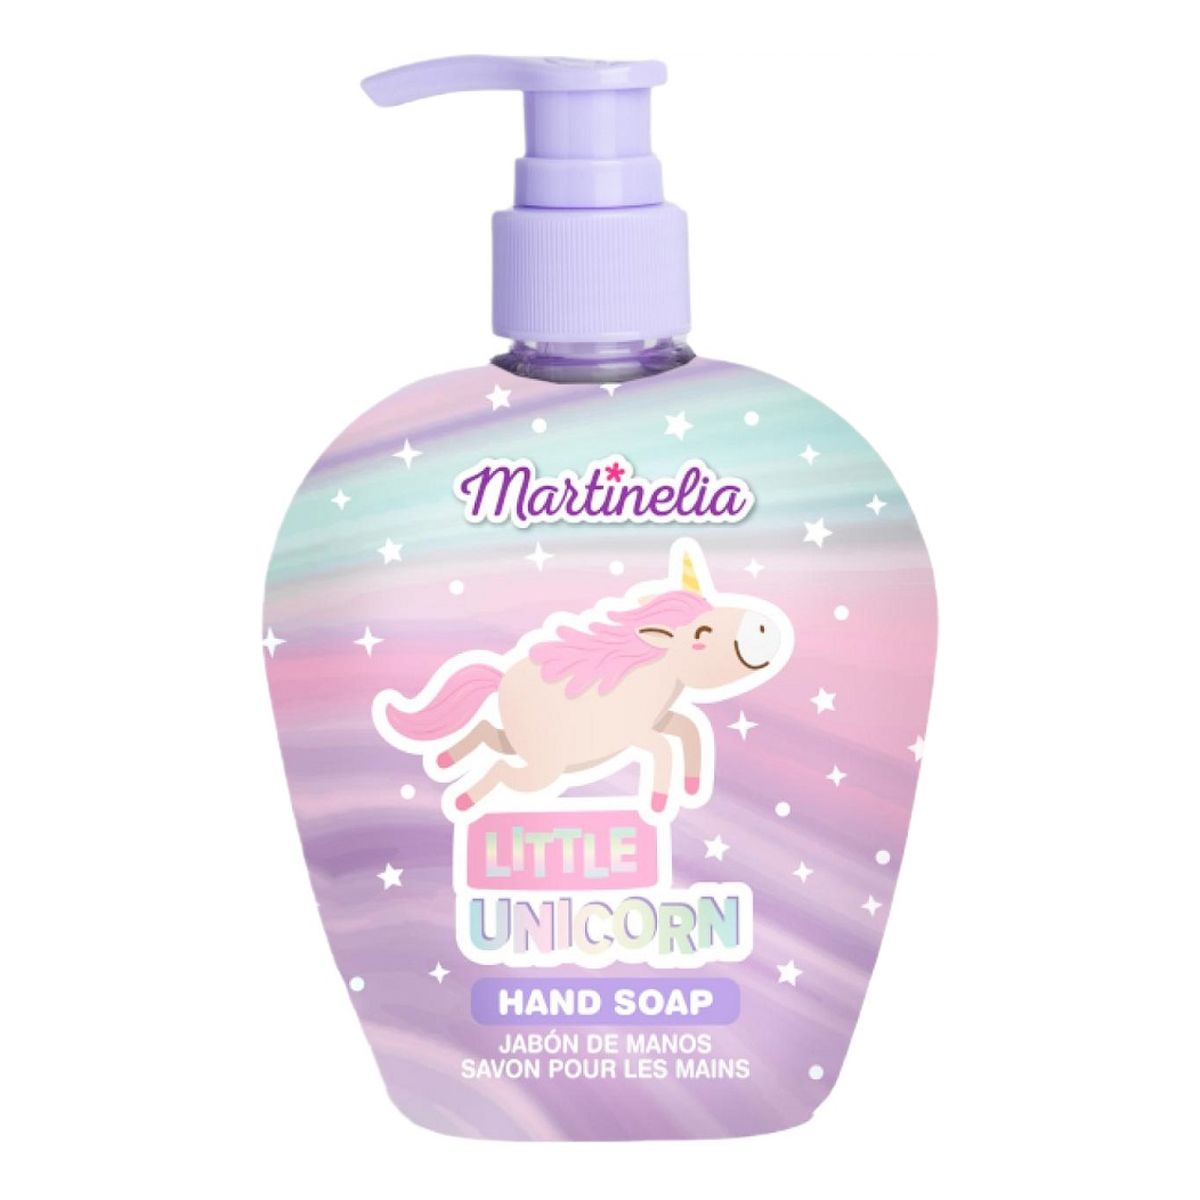 Martinelia Little Unicorn Hand Soap Mydło w płynie 250ml